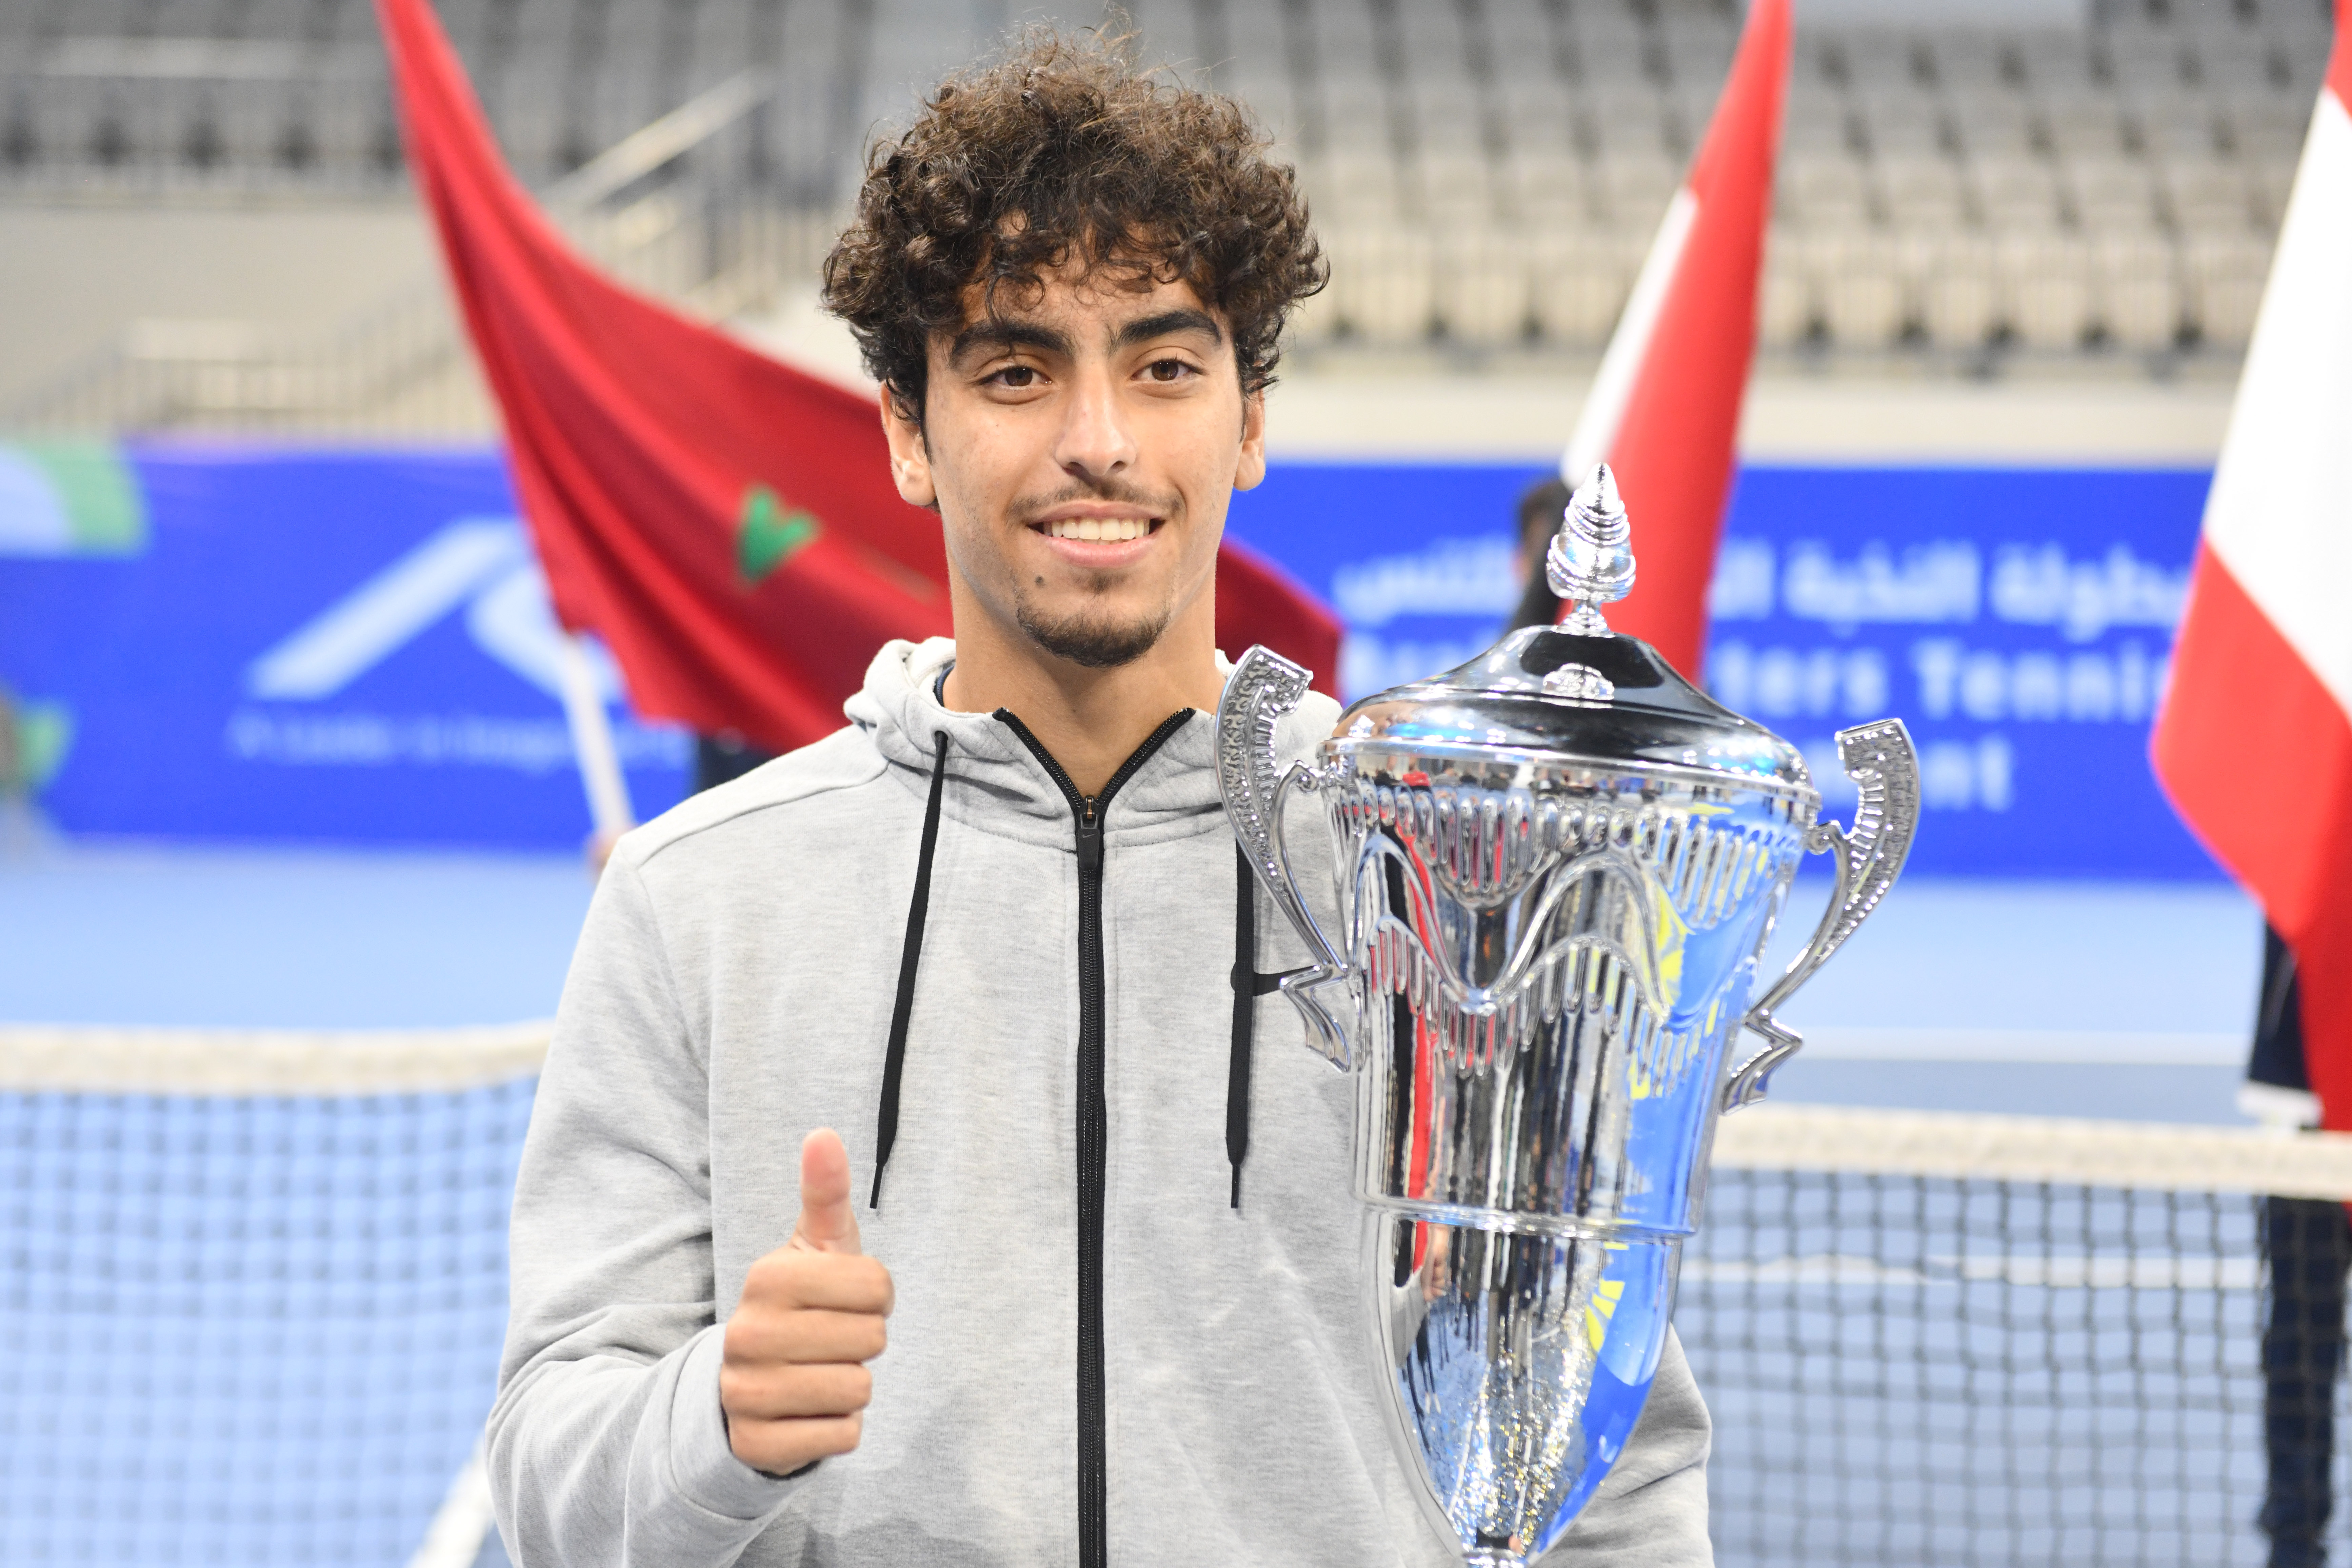 Jordan's Shelbayh wins Arab Masters in Kuwait